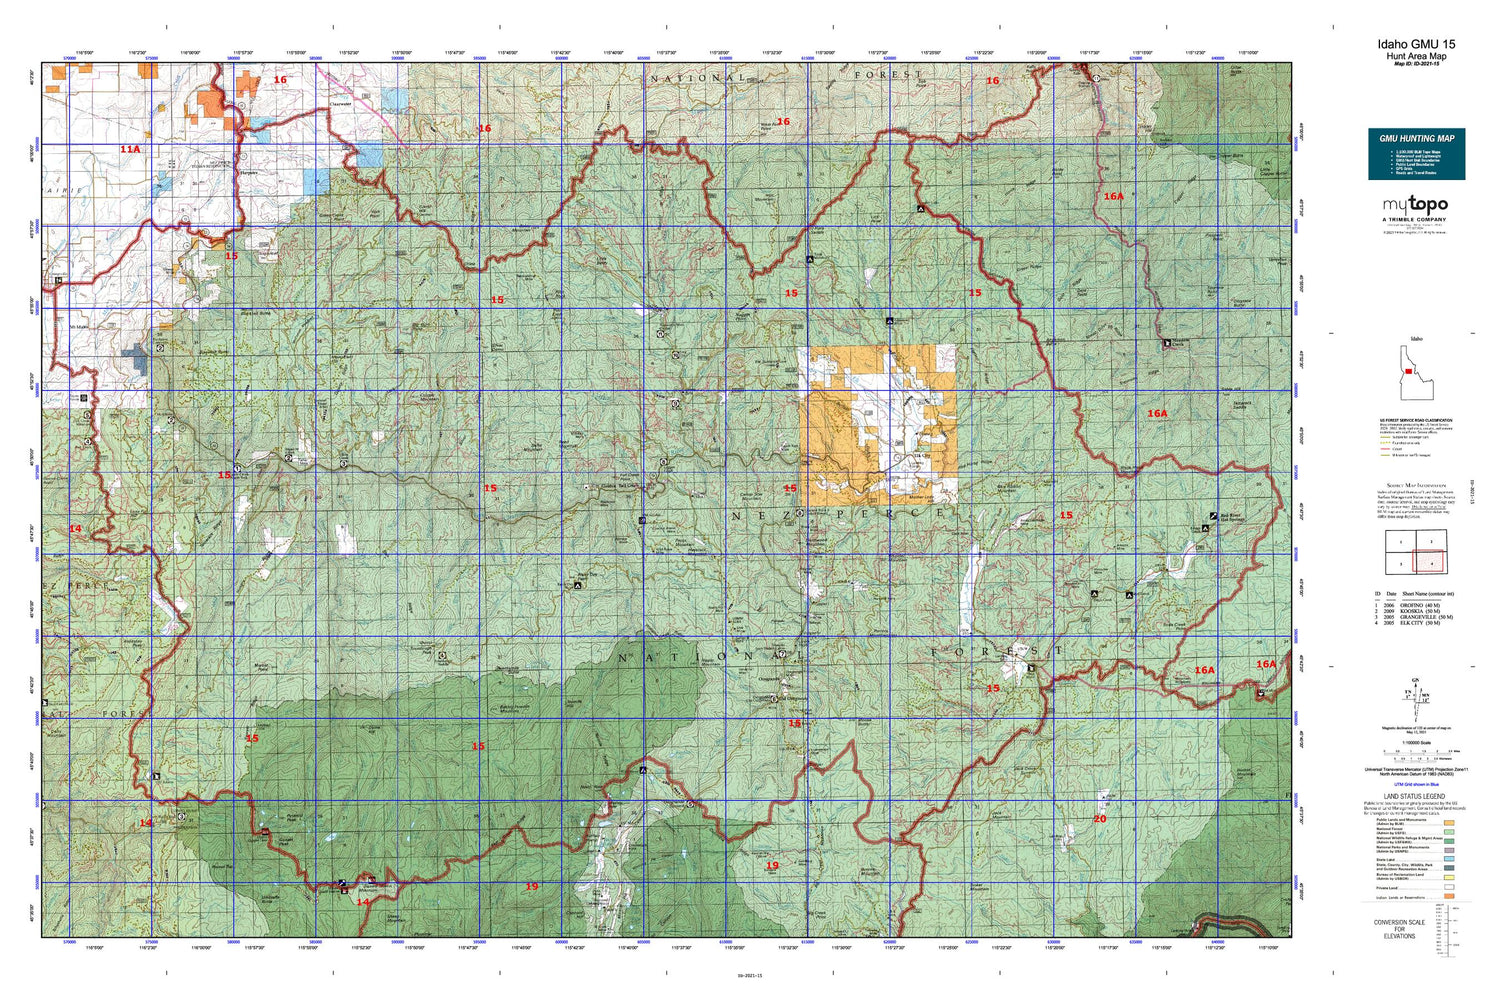 Idaho GMU 15 Map Image